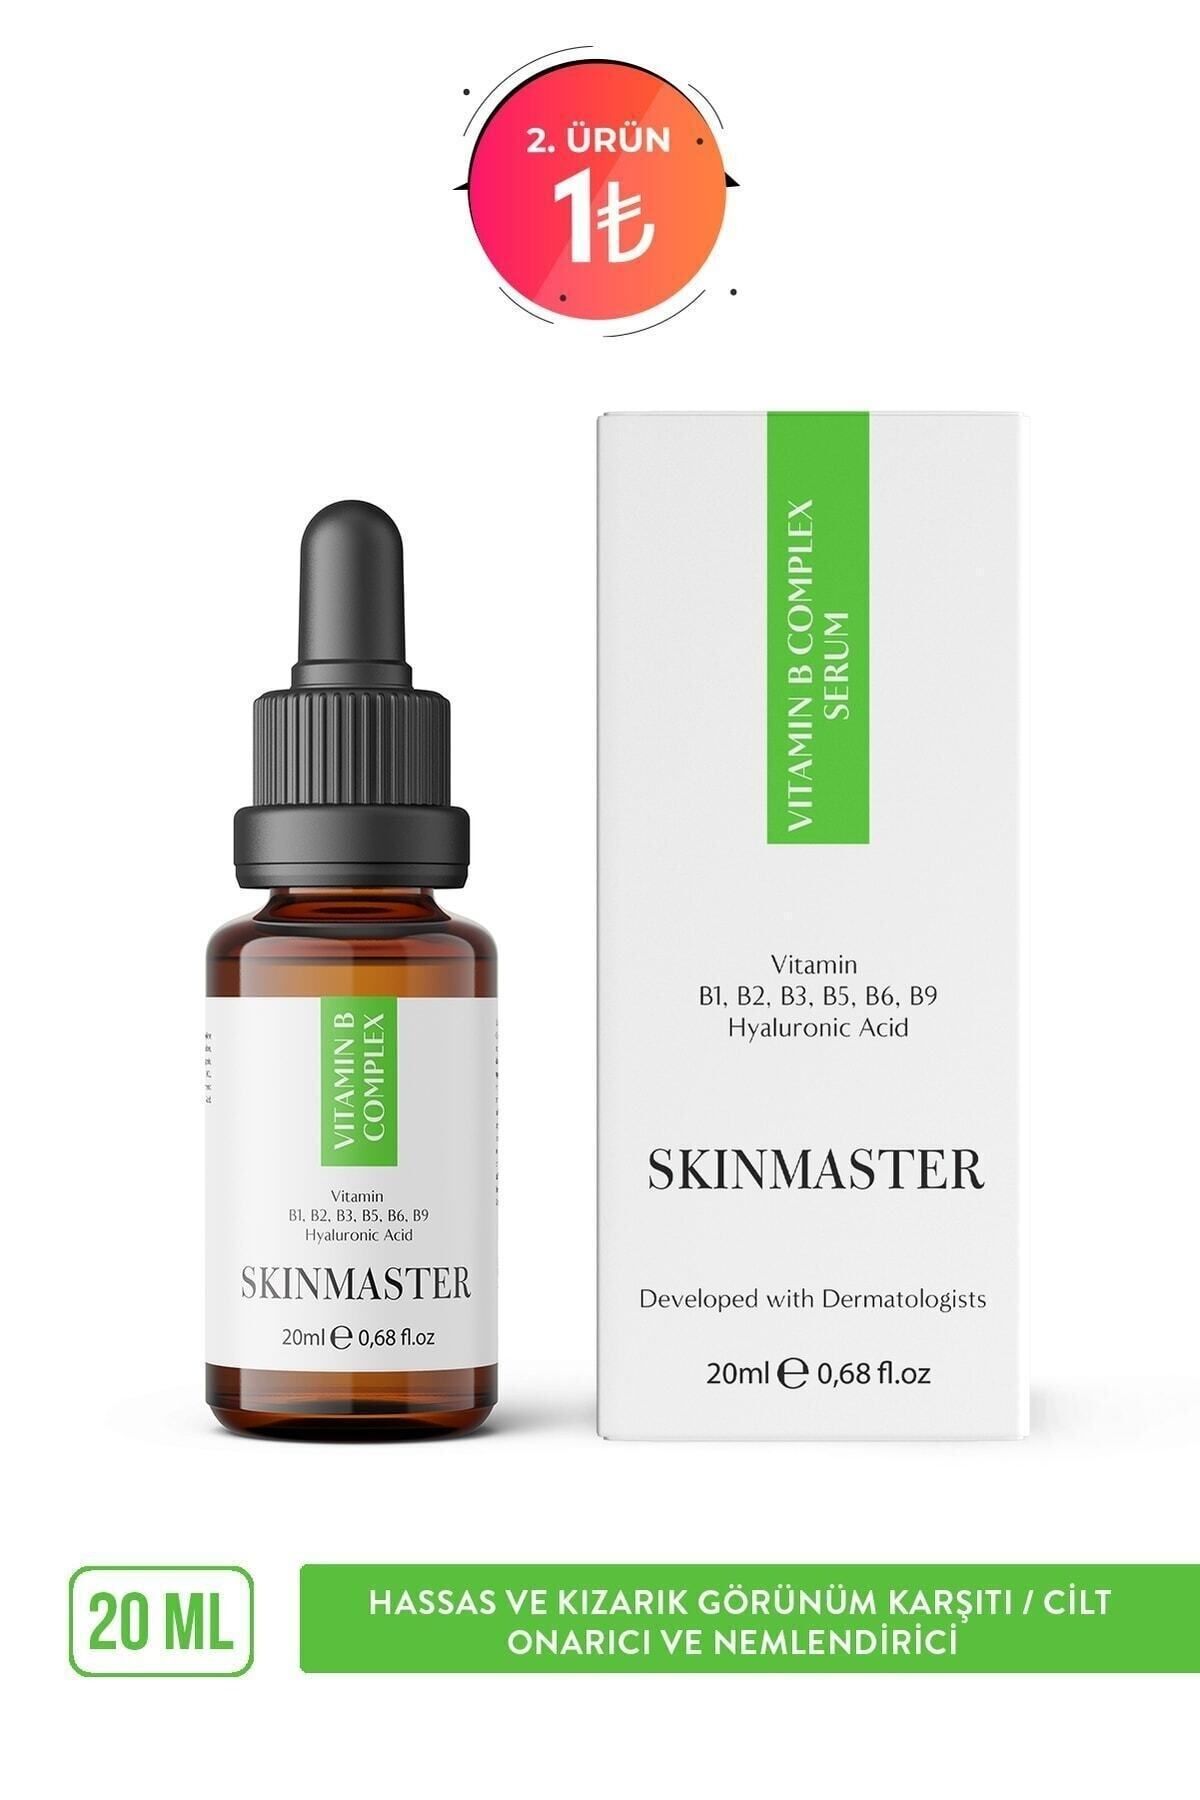 SkinMaster Cilt Yenileyici Cilt Bariyerini Güçlendirmeye Yardımcı Vita-b Complex Serum (%10 Vita-b + Ha)